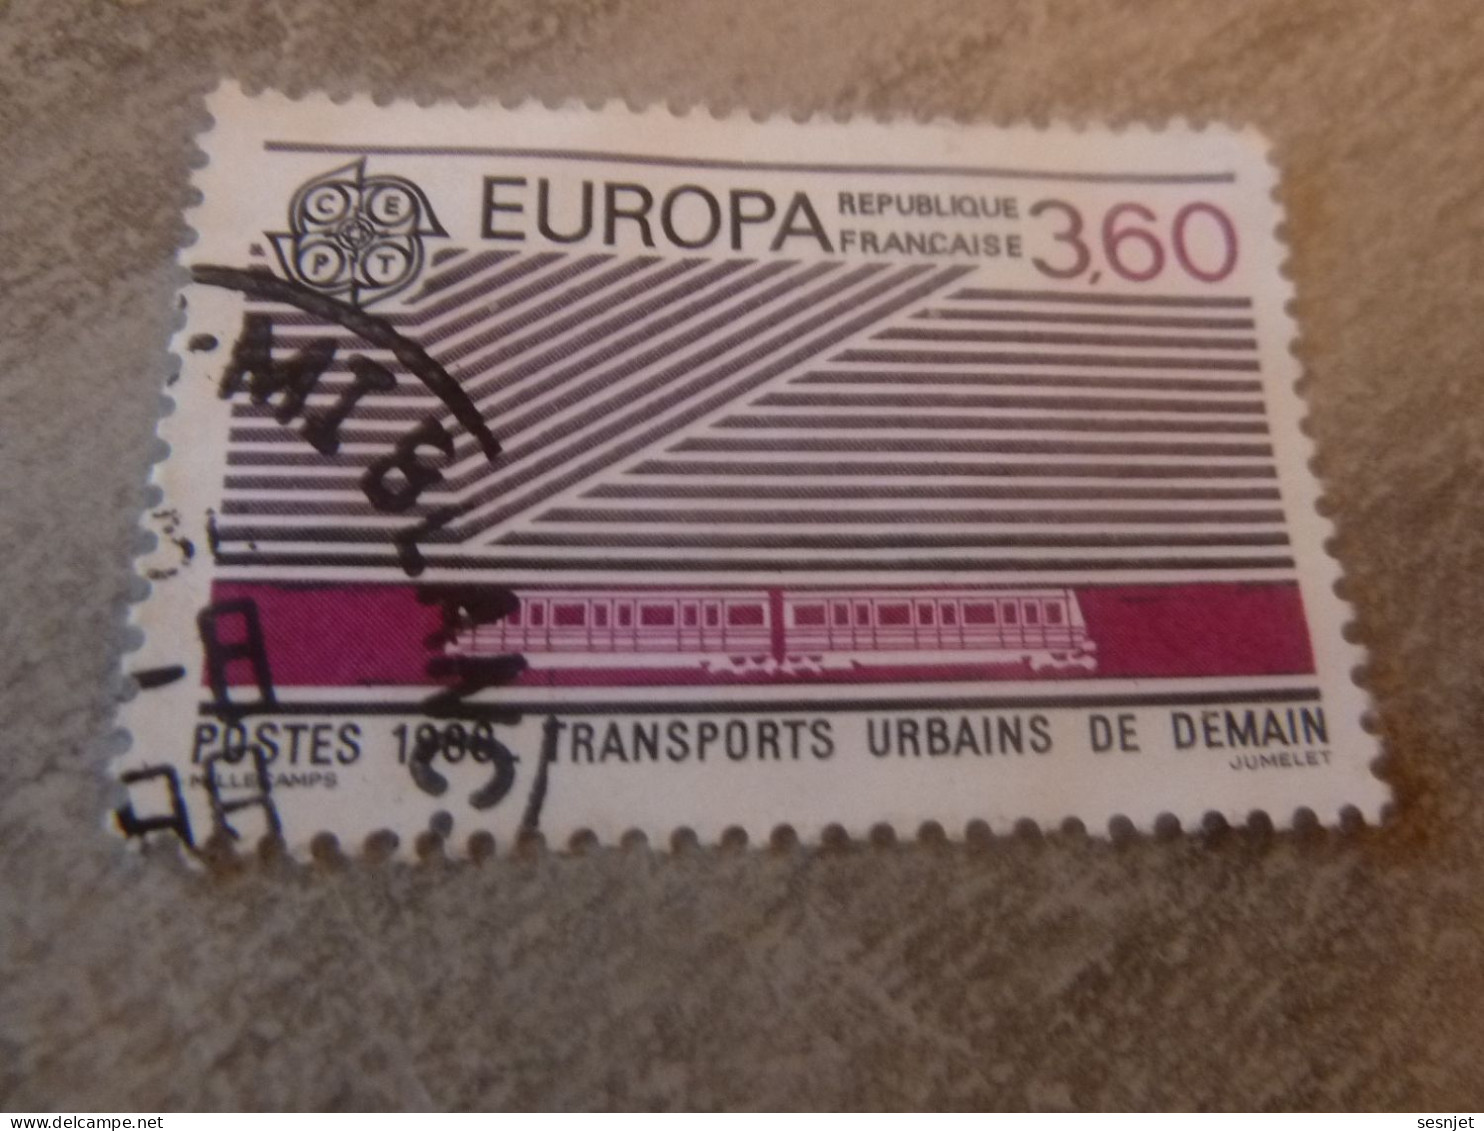 Europa - Transports - 3f.60 - Yt 2532 - Violet Et Noir - Oblitéré - Année 1988  - - 1988